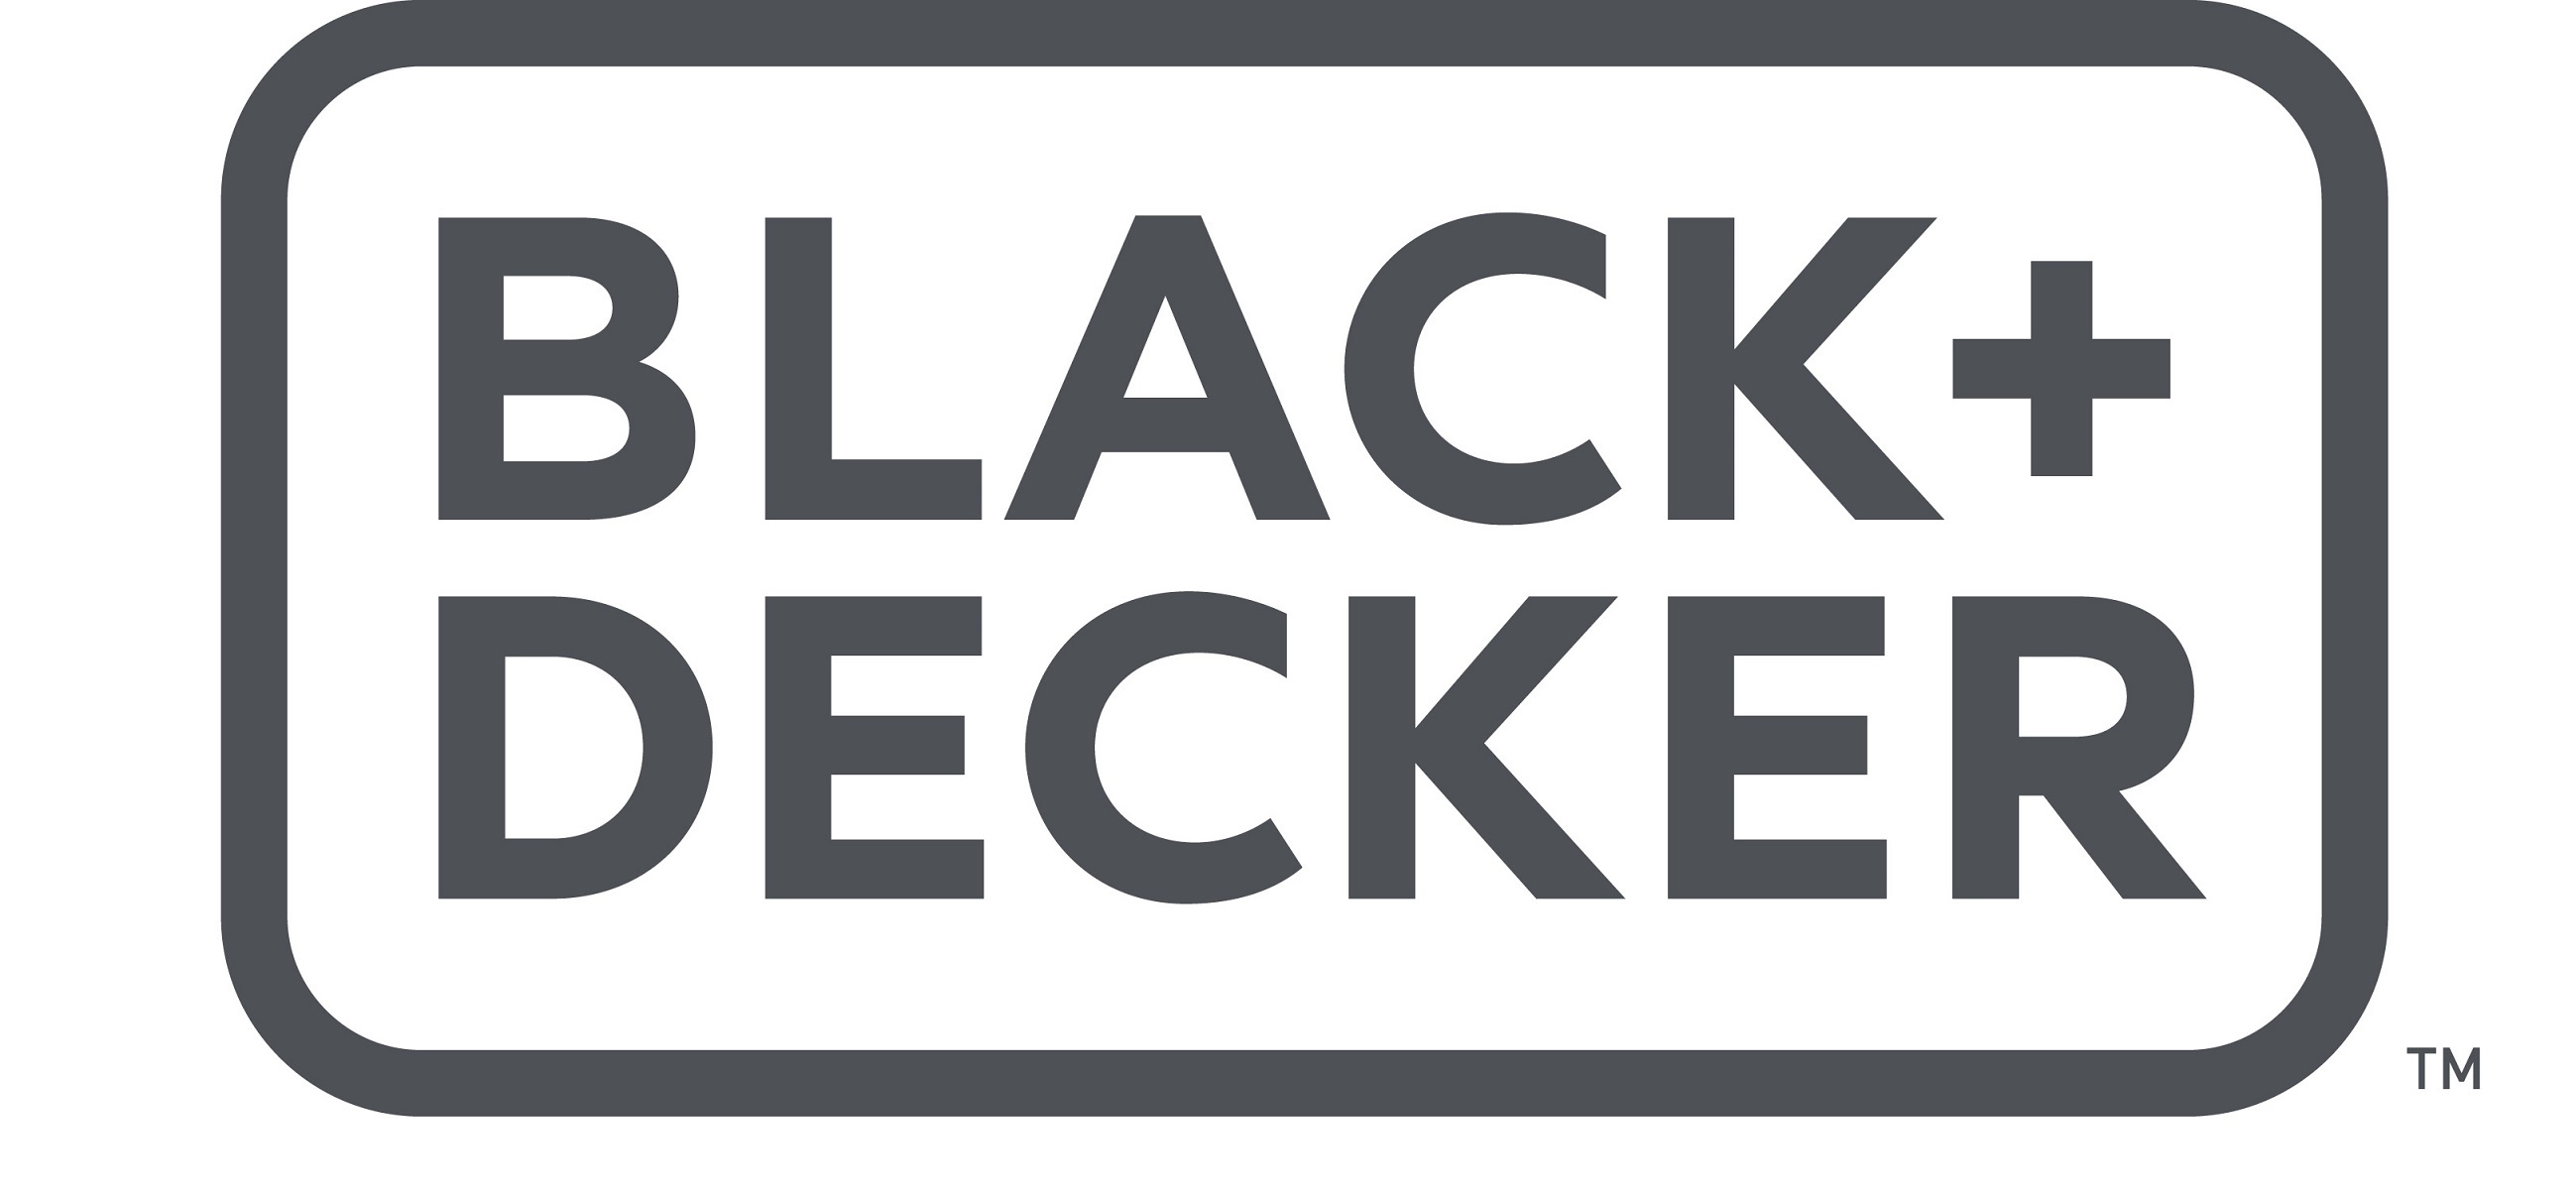 BLACK+DECKER 5035048631850